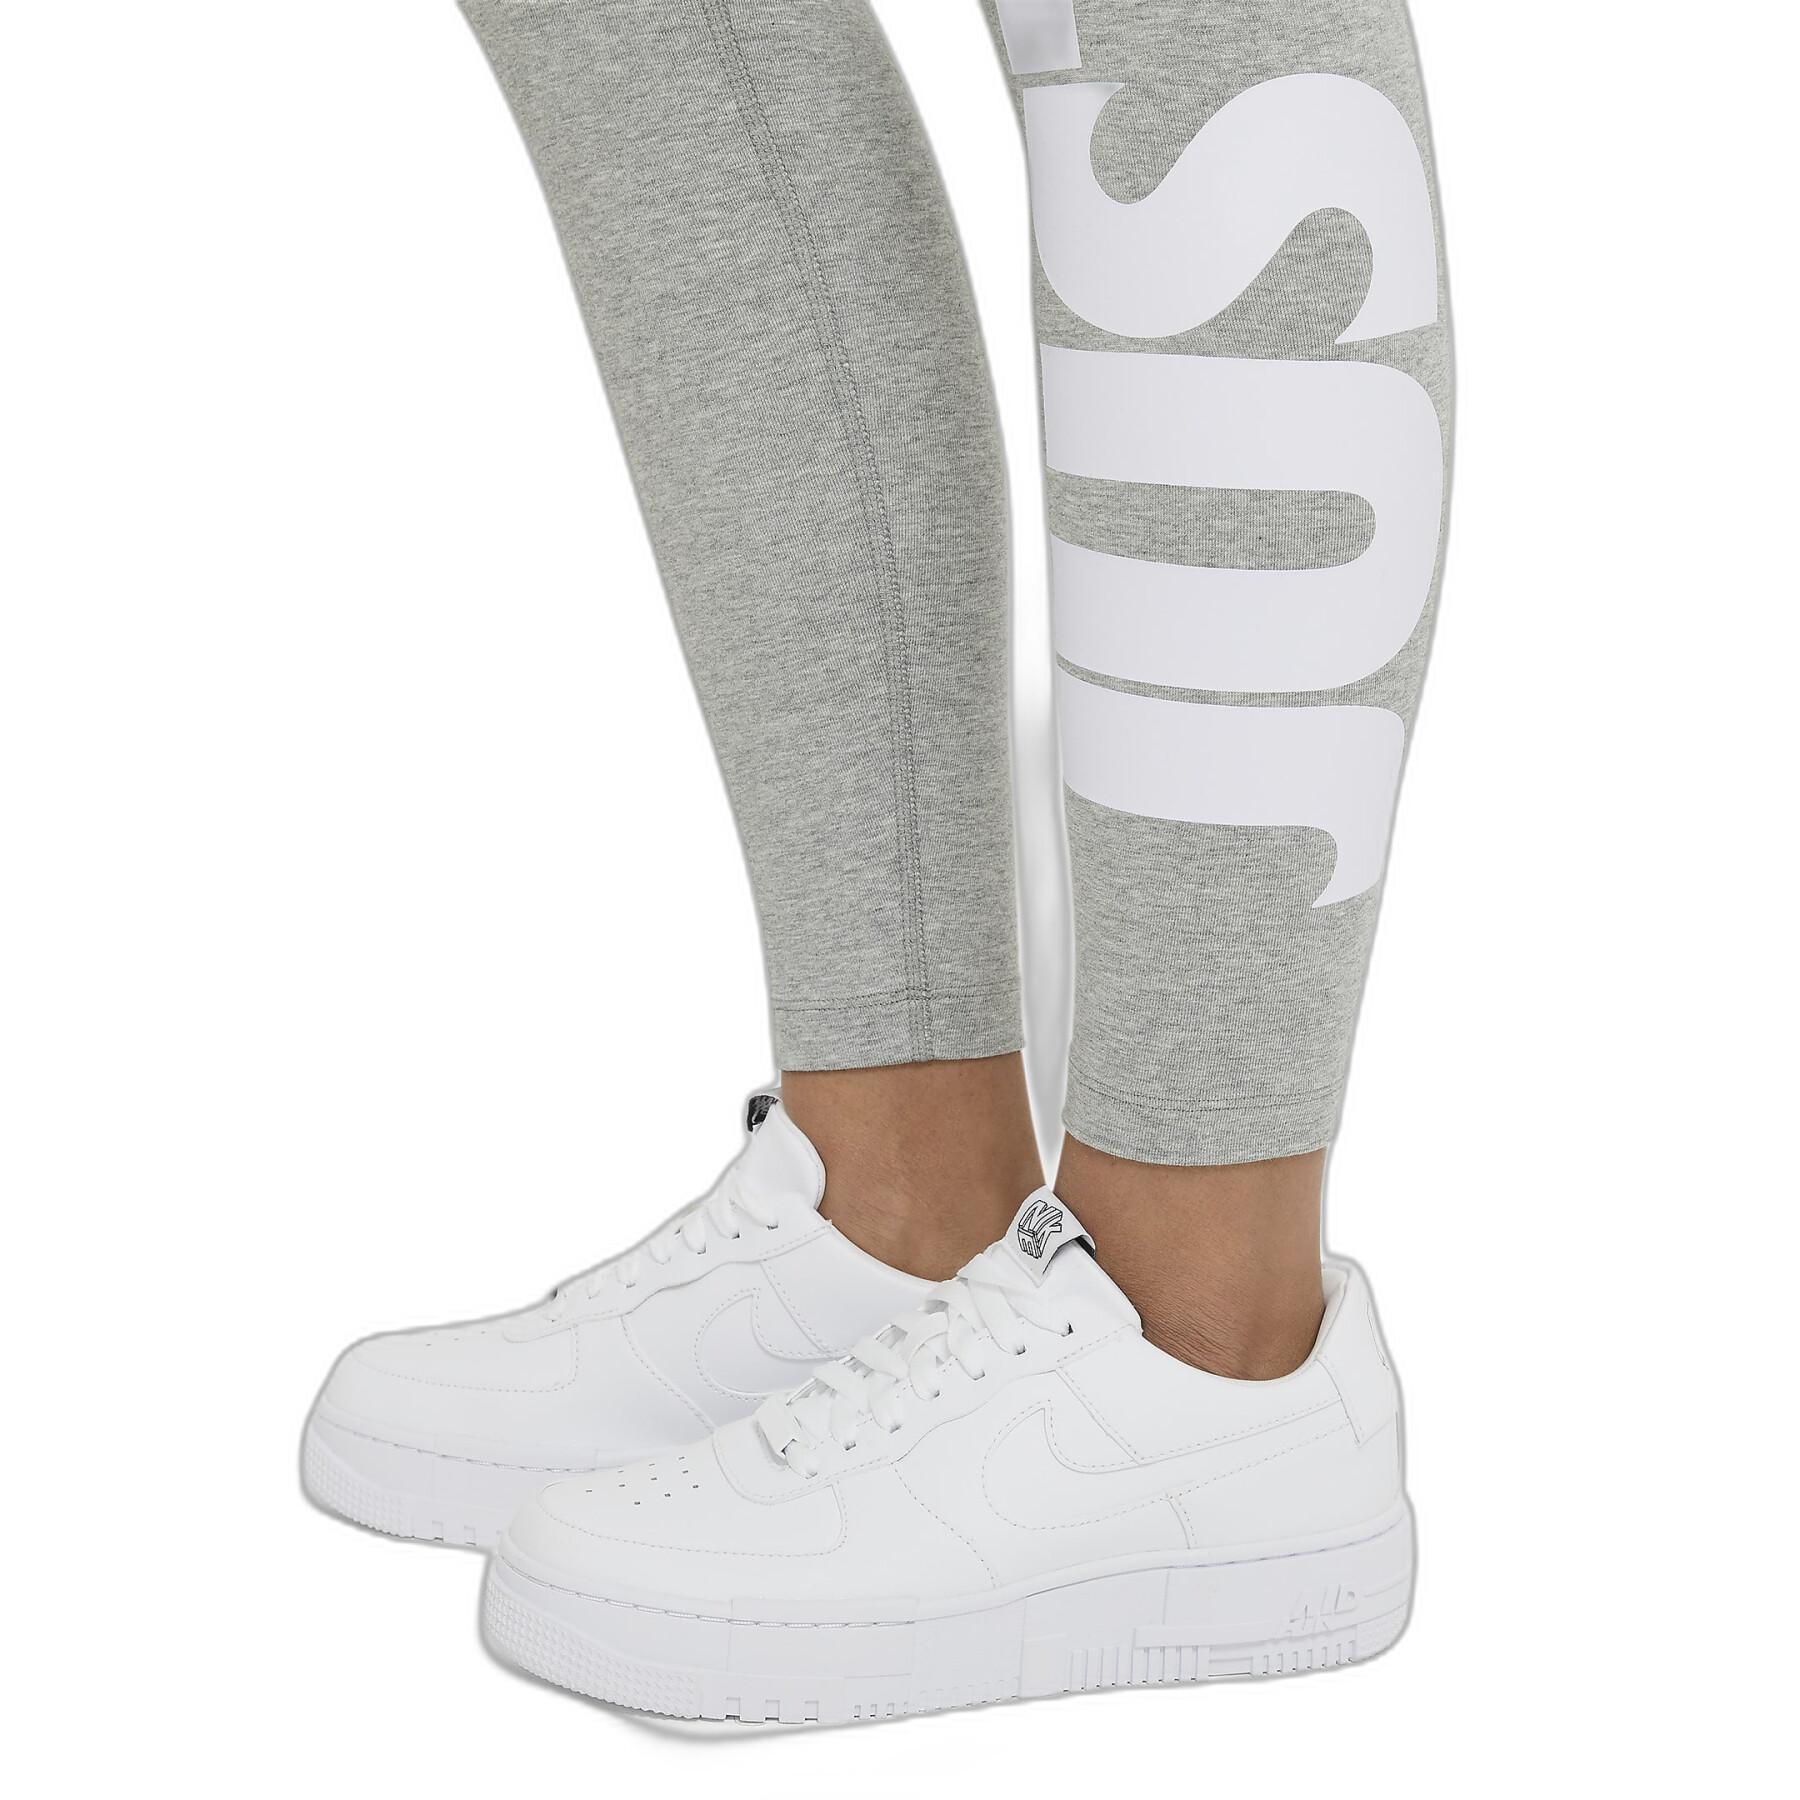 Legging woman Nike Sportswear Essential